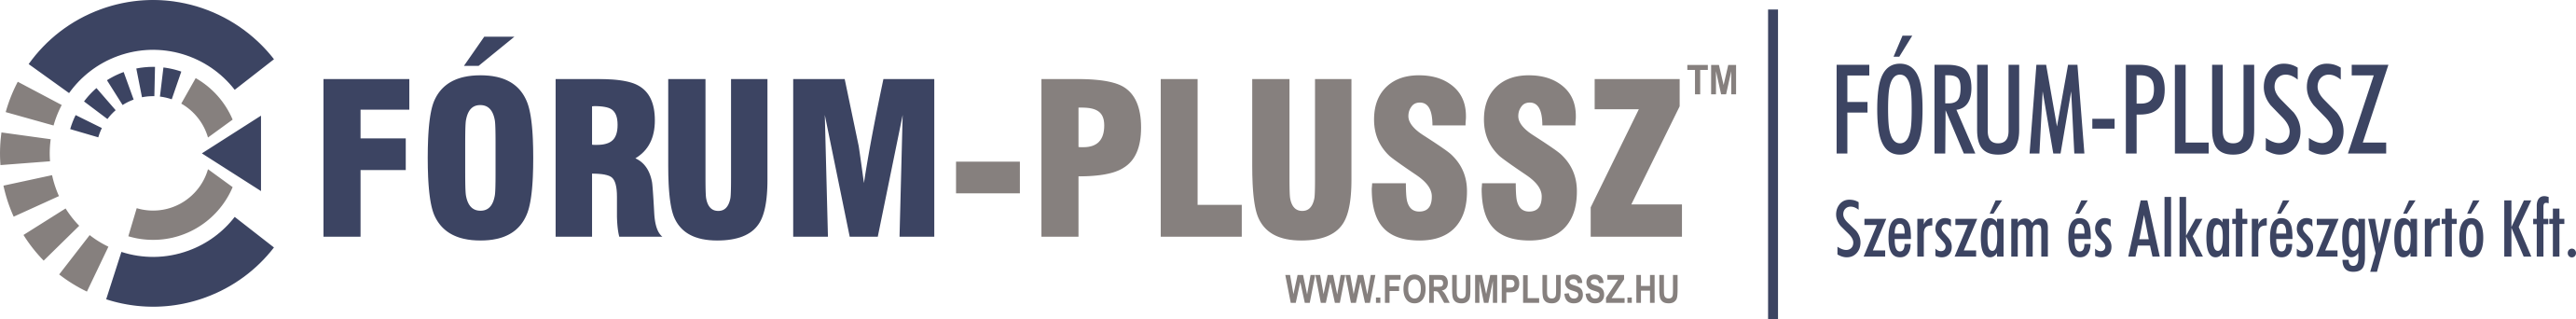 Fórum Plussz Ltd.